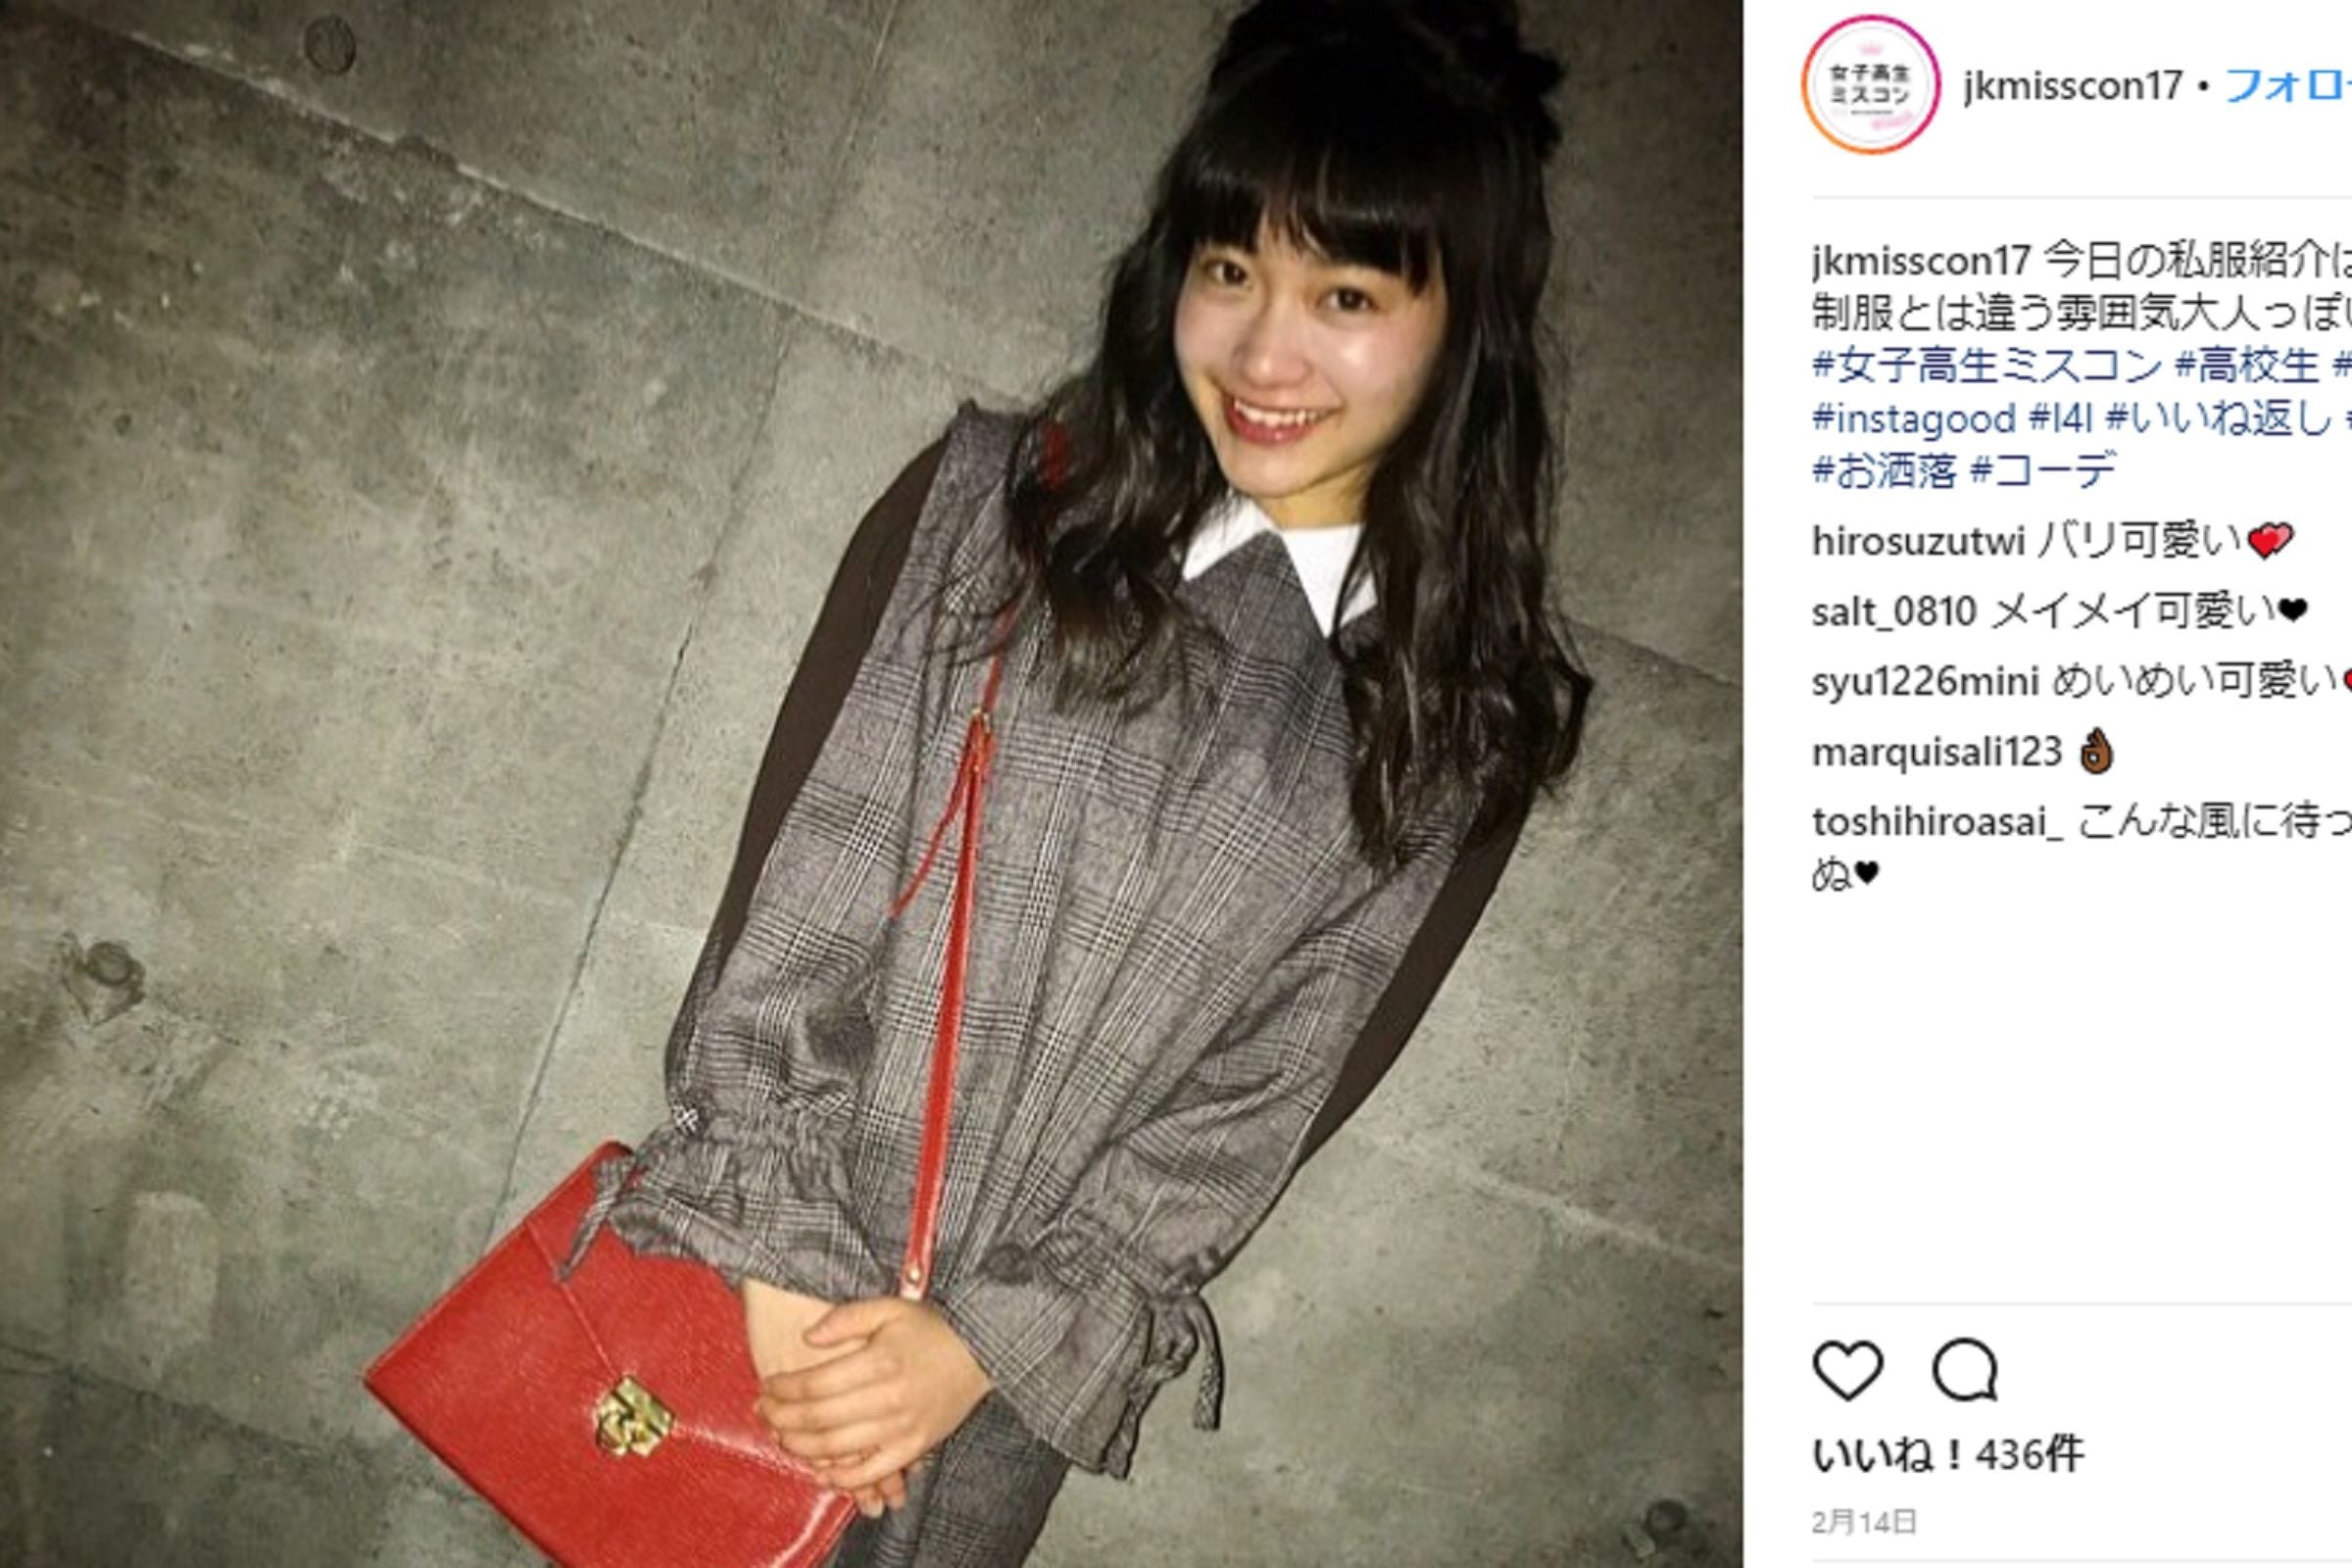 黒髪清楚系はネット民にも人気 日本一かわいい女子高生 めいめい17歳の制服姿 ニュースサイトしらべぇ